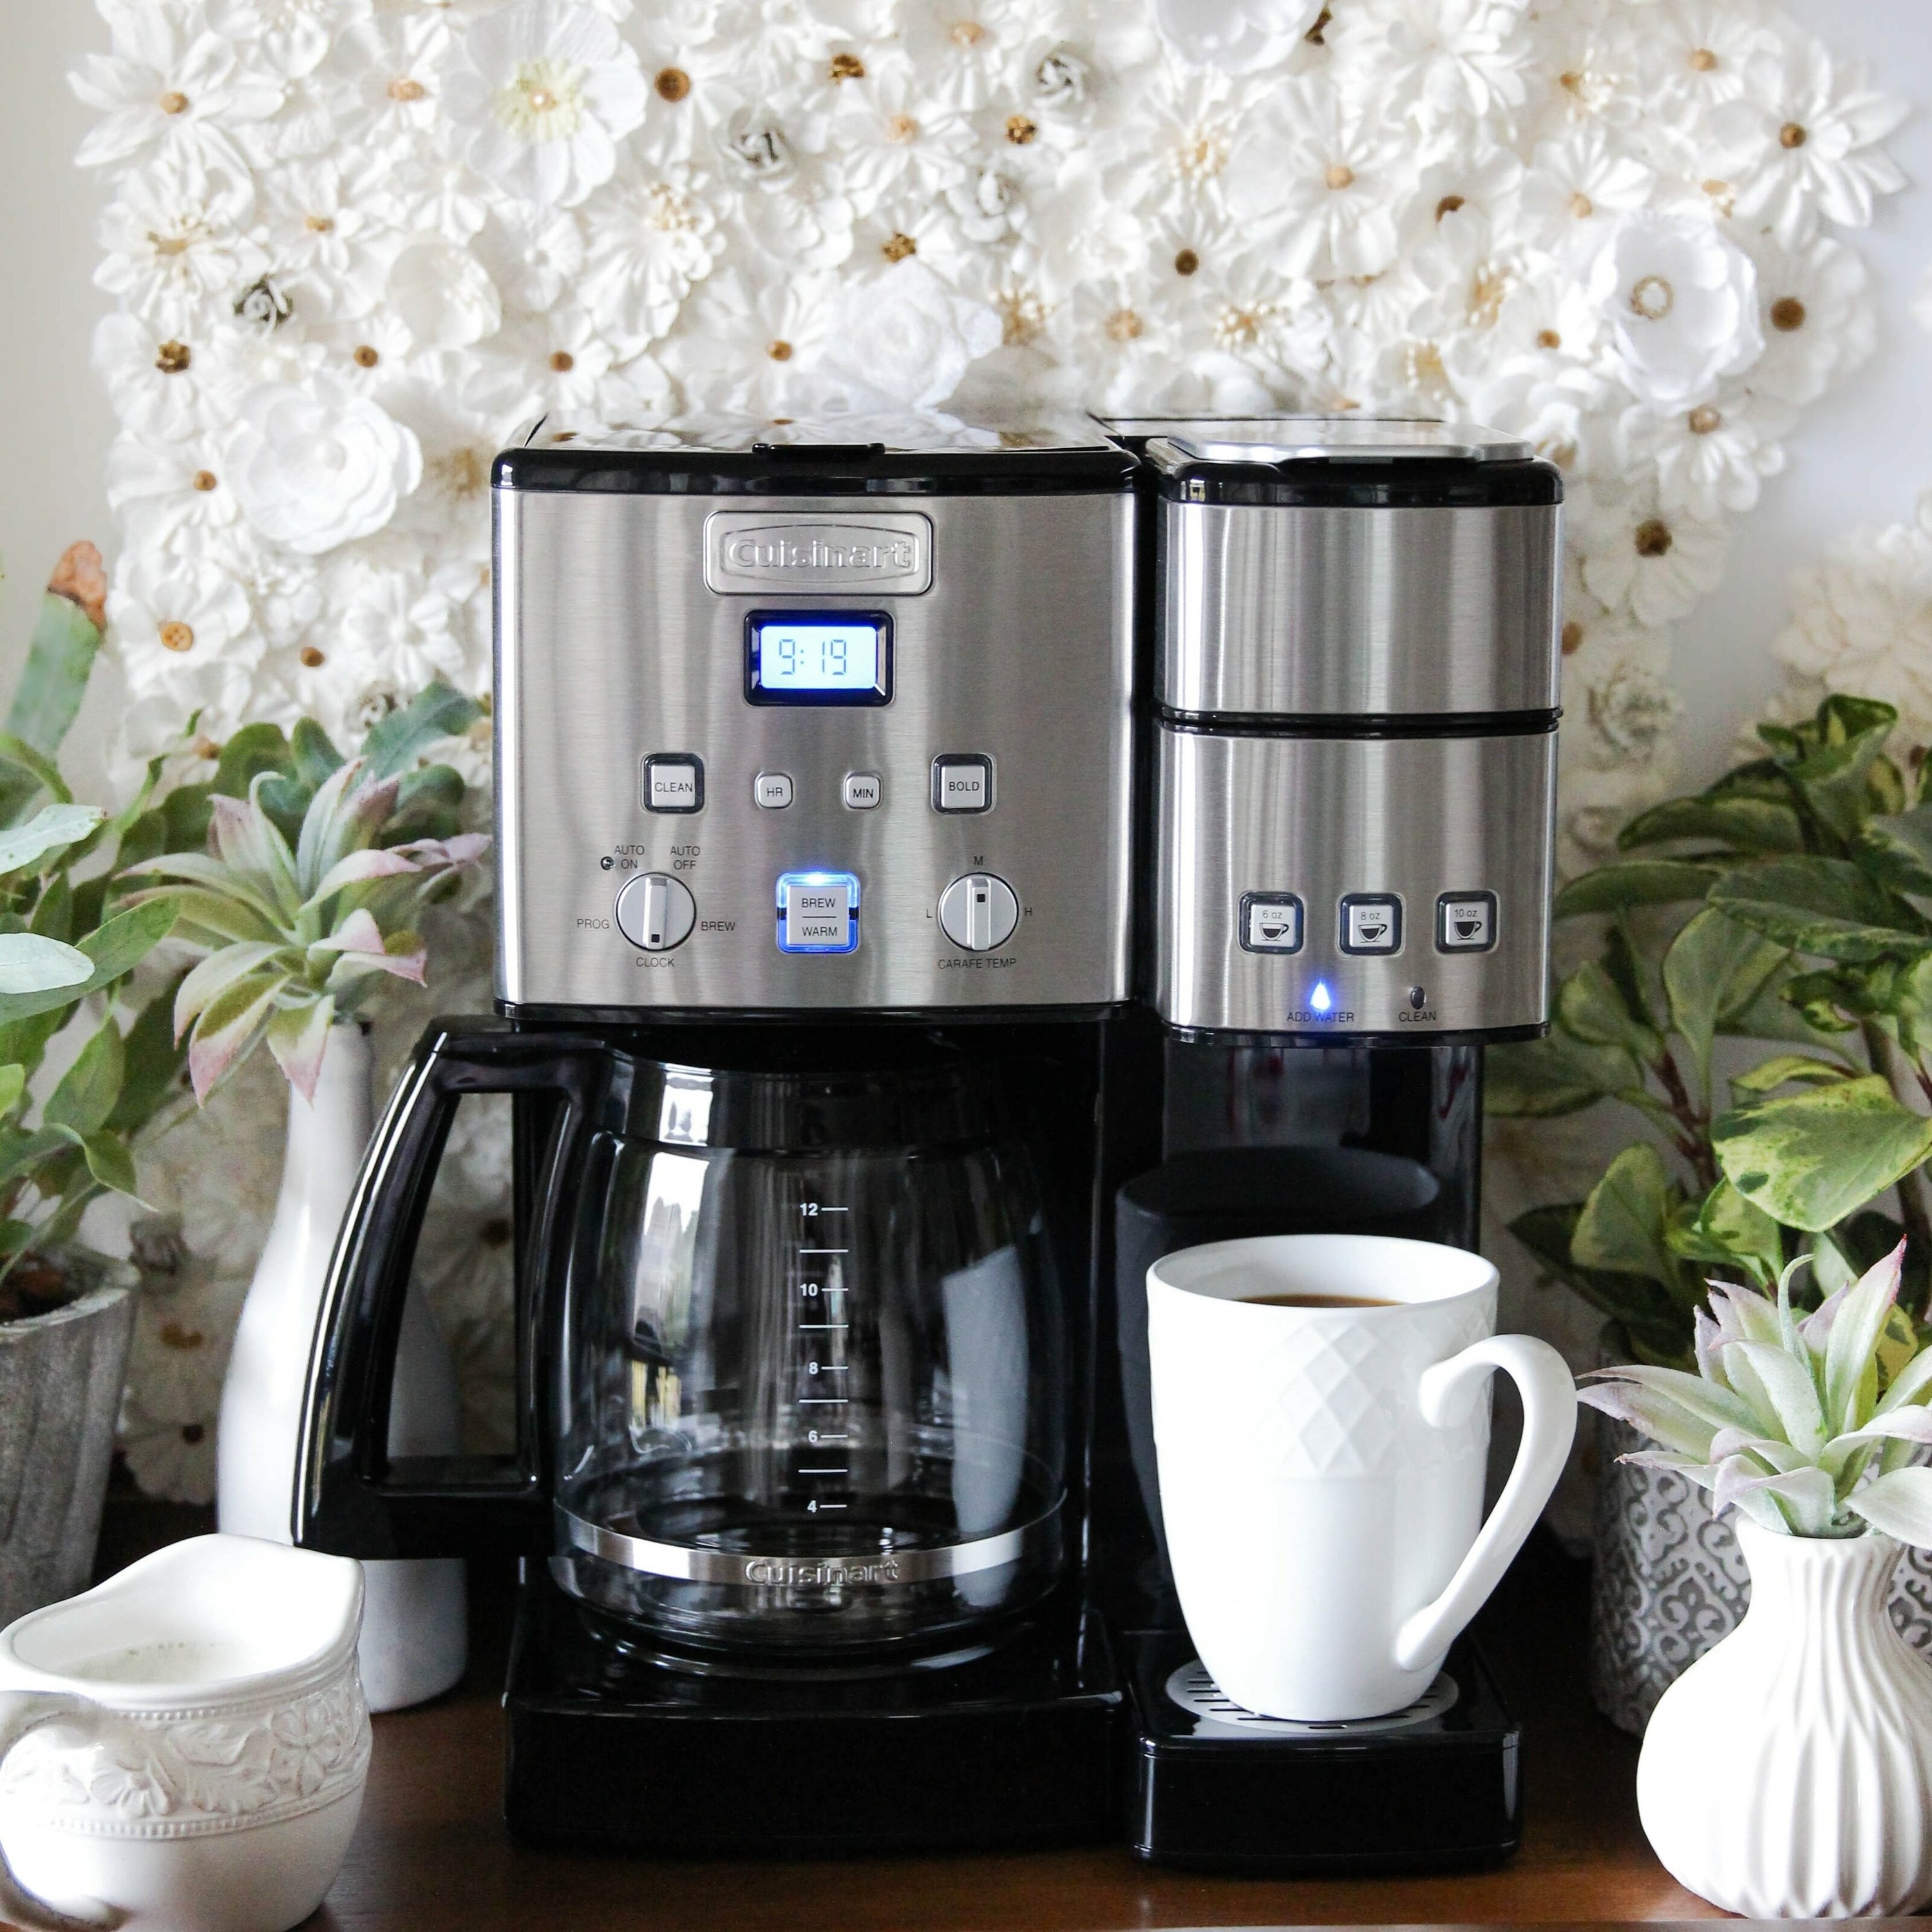 Coffee machine on kitchen counter